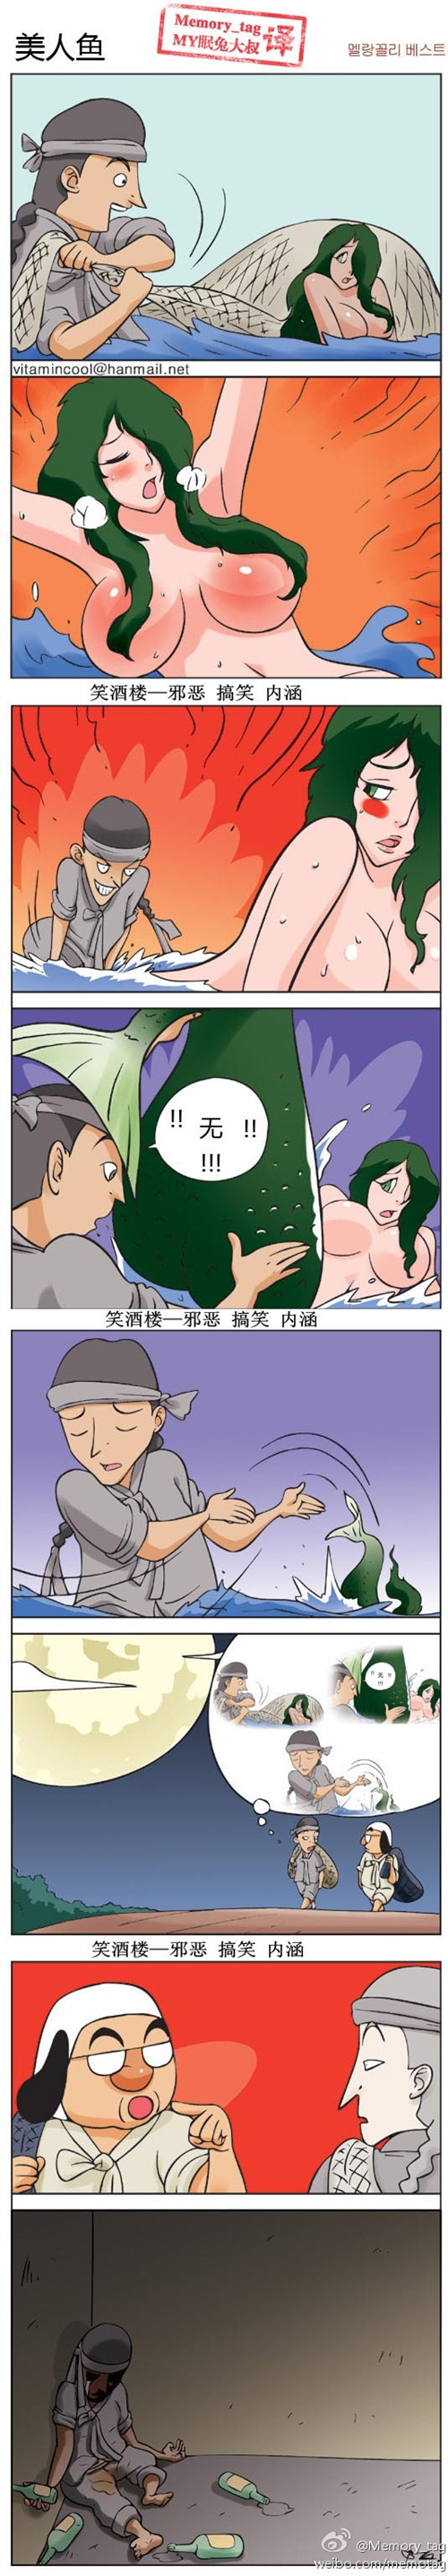 内涵漫画|韩国邪恶小漫画之美人鱼